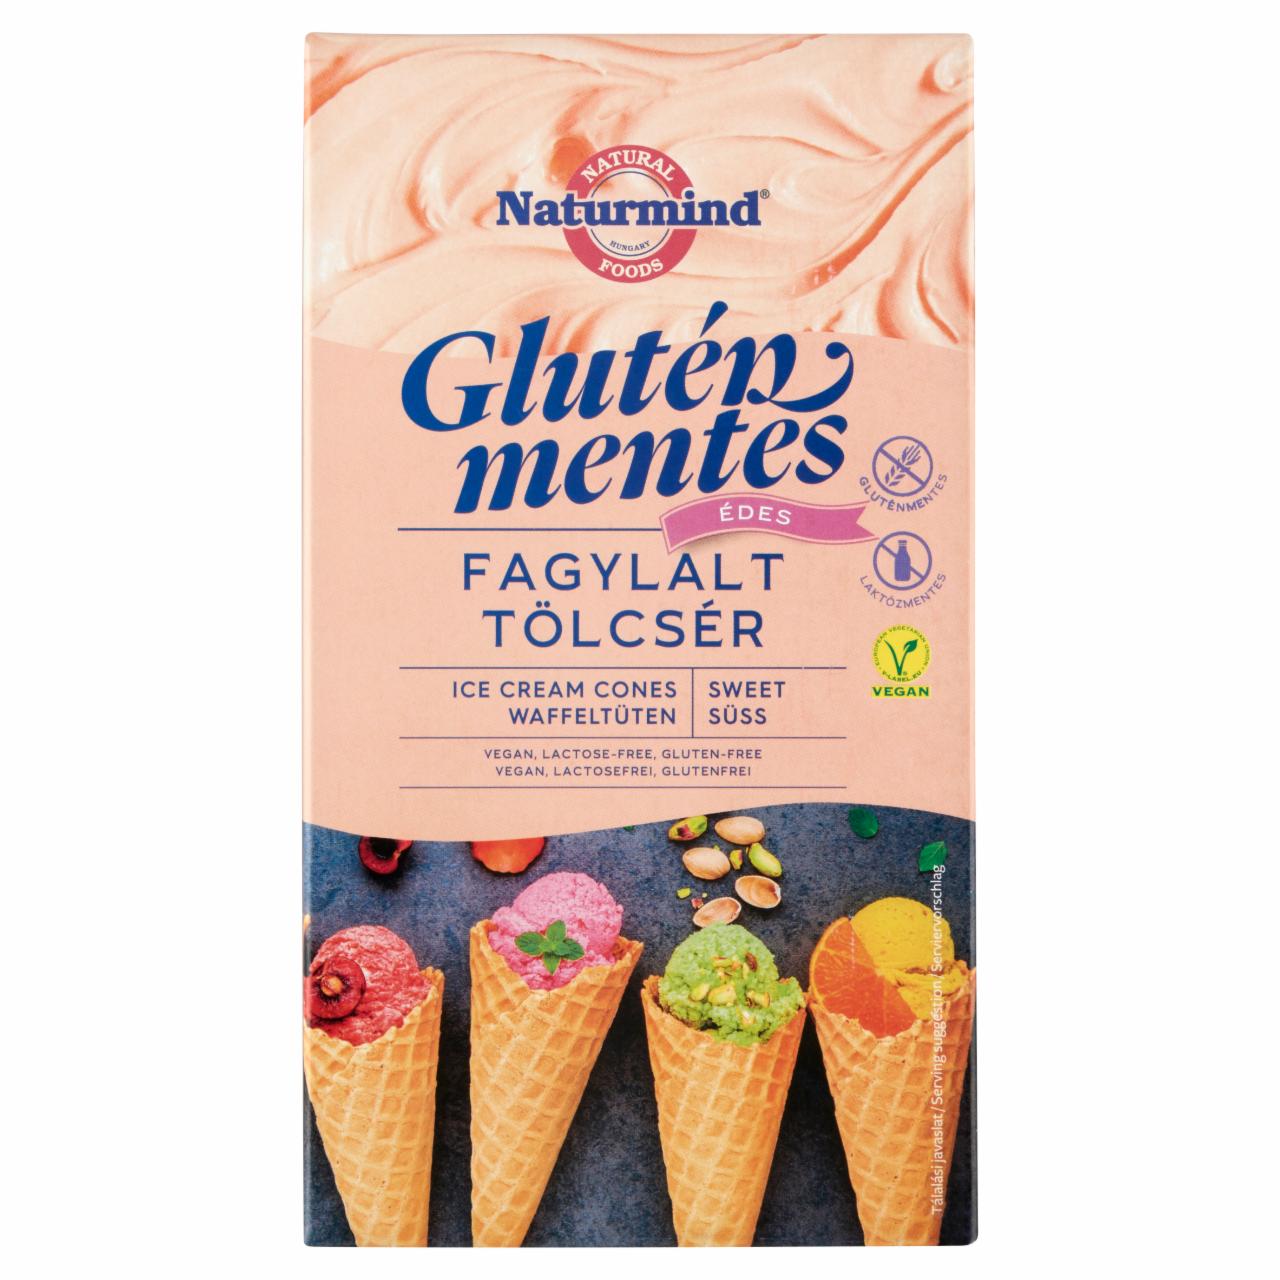 Képek - Naturmind gluténmentes édes fagylalt tölcsér 6 db 85 g